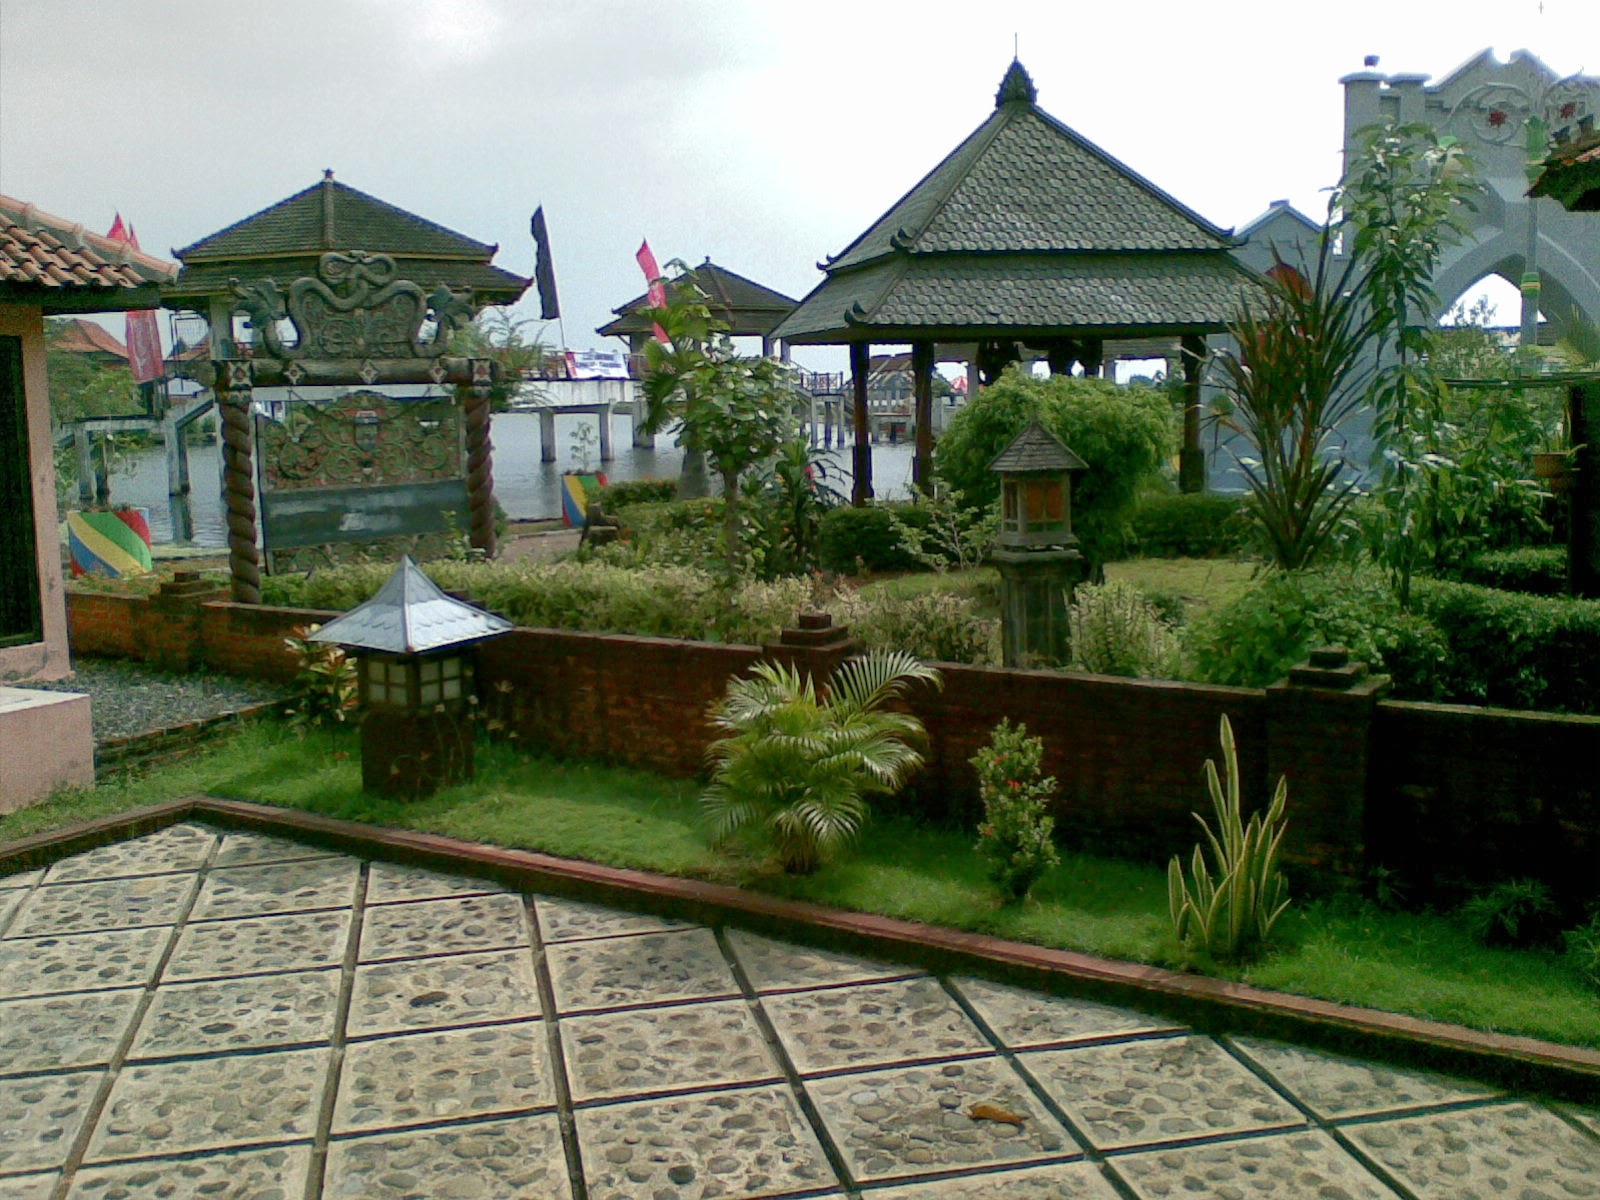 Taman Wisata Kopeng Semarang Jawa Tengah Indonesia